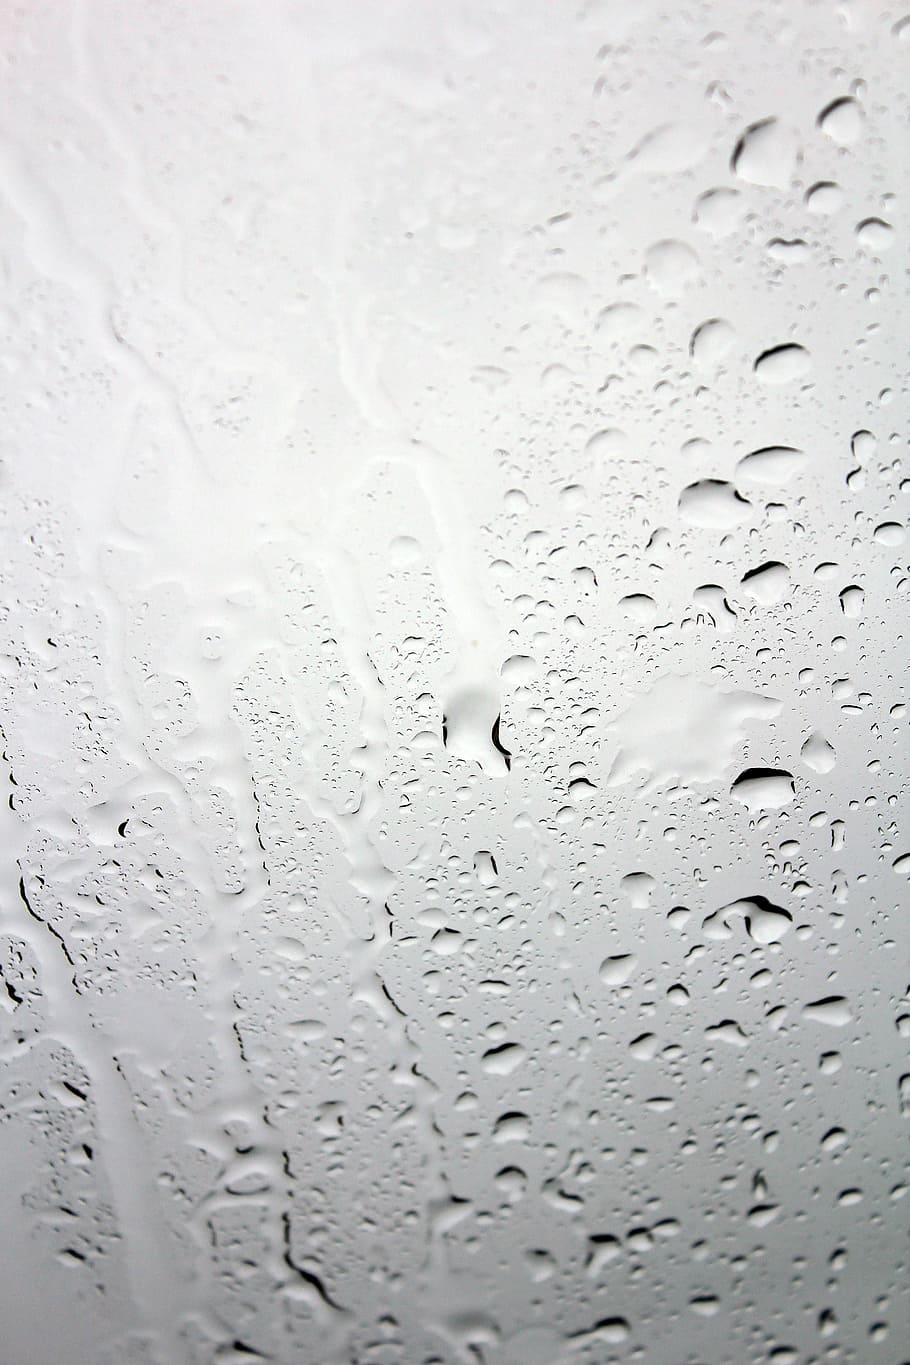 vidro, gotas de água, Disco, Janela, Água, Gotejamento, Molhado, chuva, depressão, gota de chuva